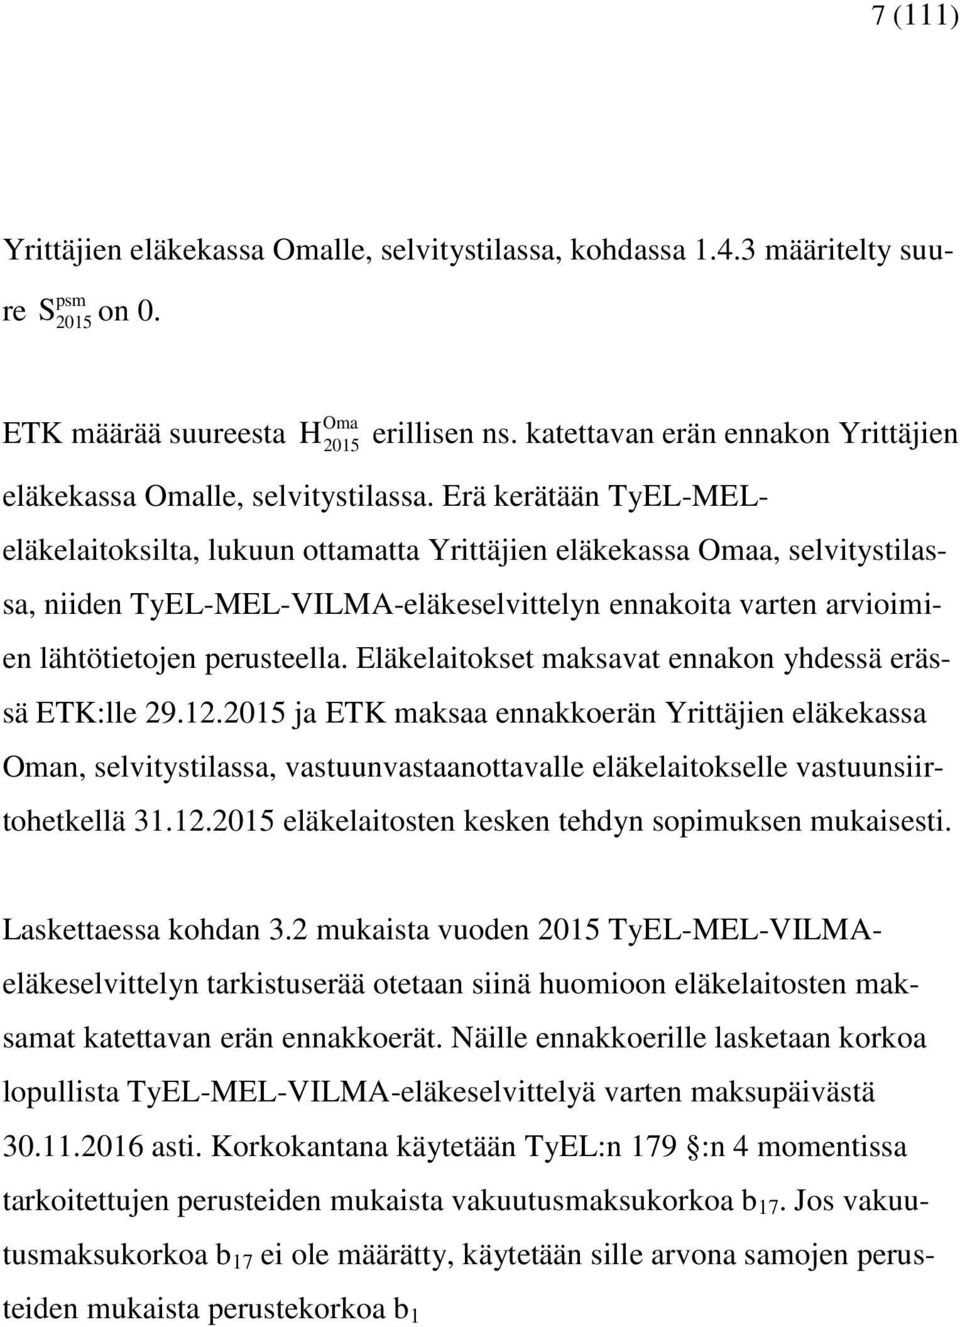 rä kerätään TyL-MLeläkelaitoksilta, lukuun ottamatta Yrittäjien eläkekassa Omaa, selitystilassa, niiden TyL-ML-VILMA-eläkeselittelyn ennakoita arten arioimien lähtötietojen perusteella.